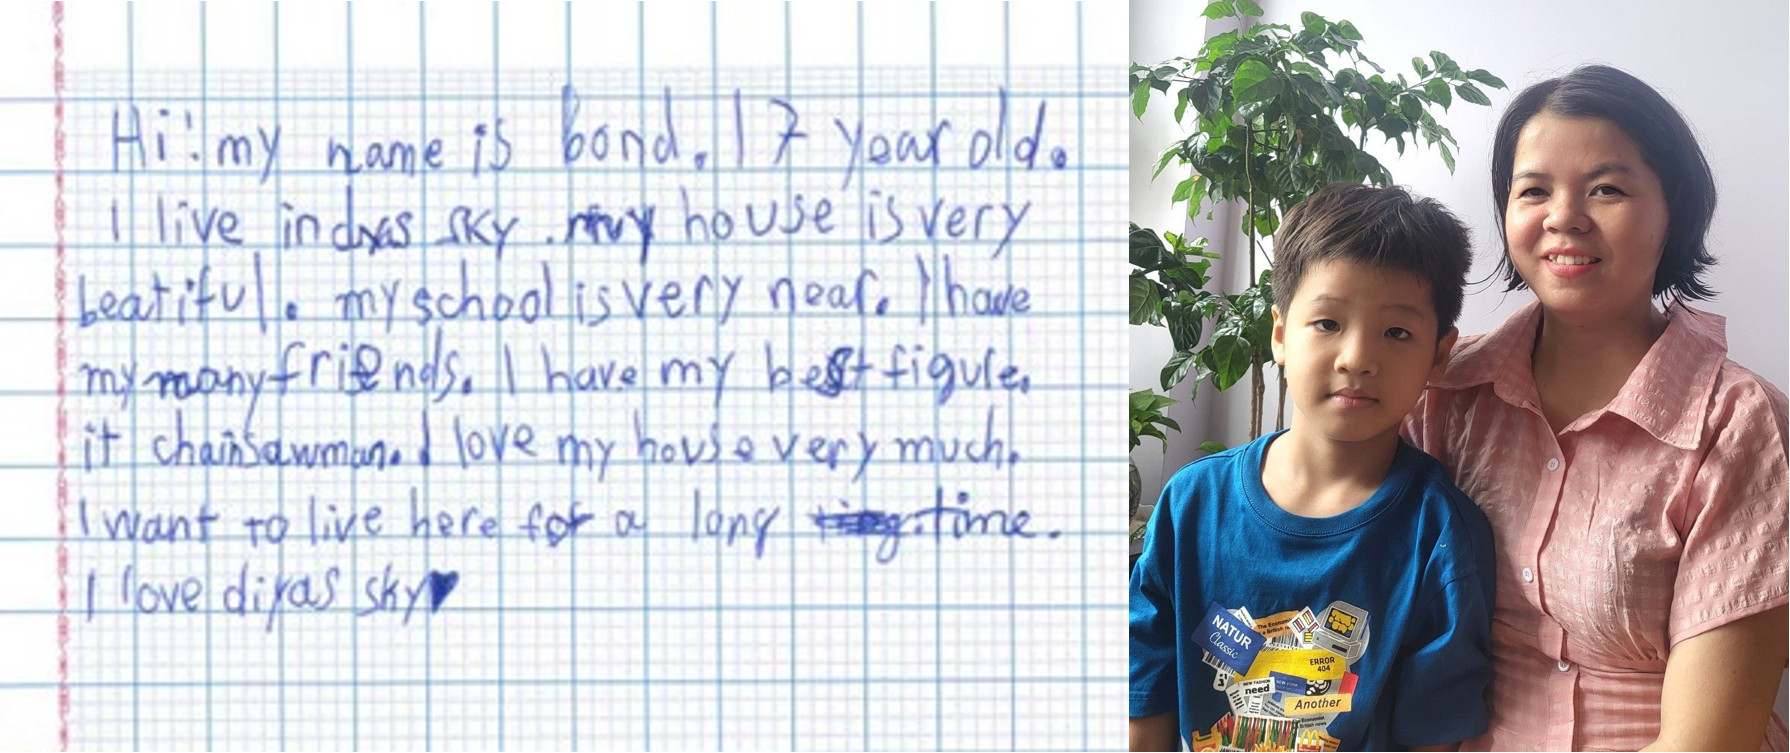 Bé Bond (7 tuổi) đầy tự hào khoe bài văn được viết bằng tiếng Anh, mô tả về tổ ấm của mình tại DIYAS SKY 